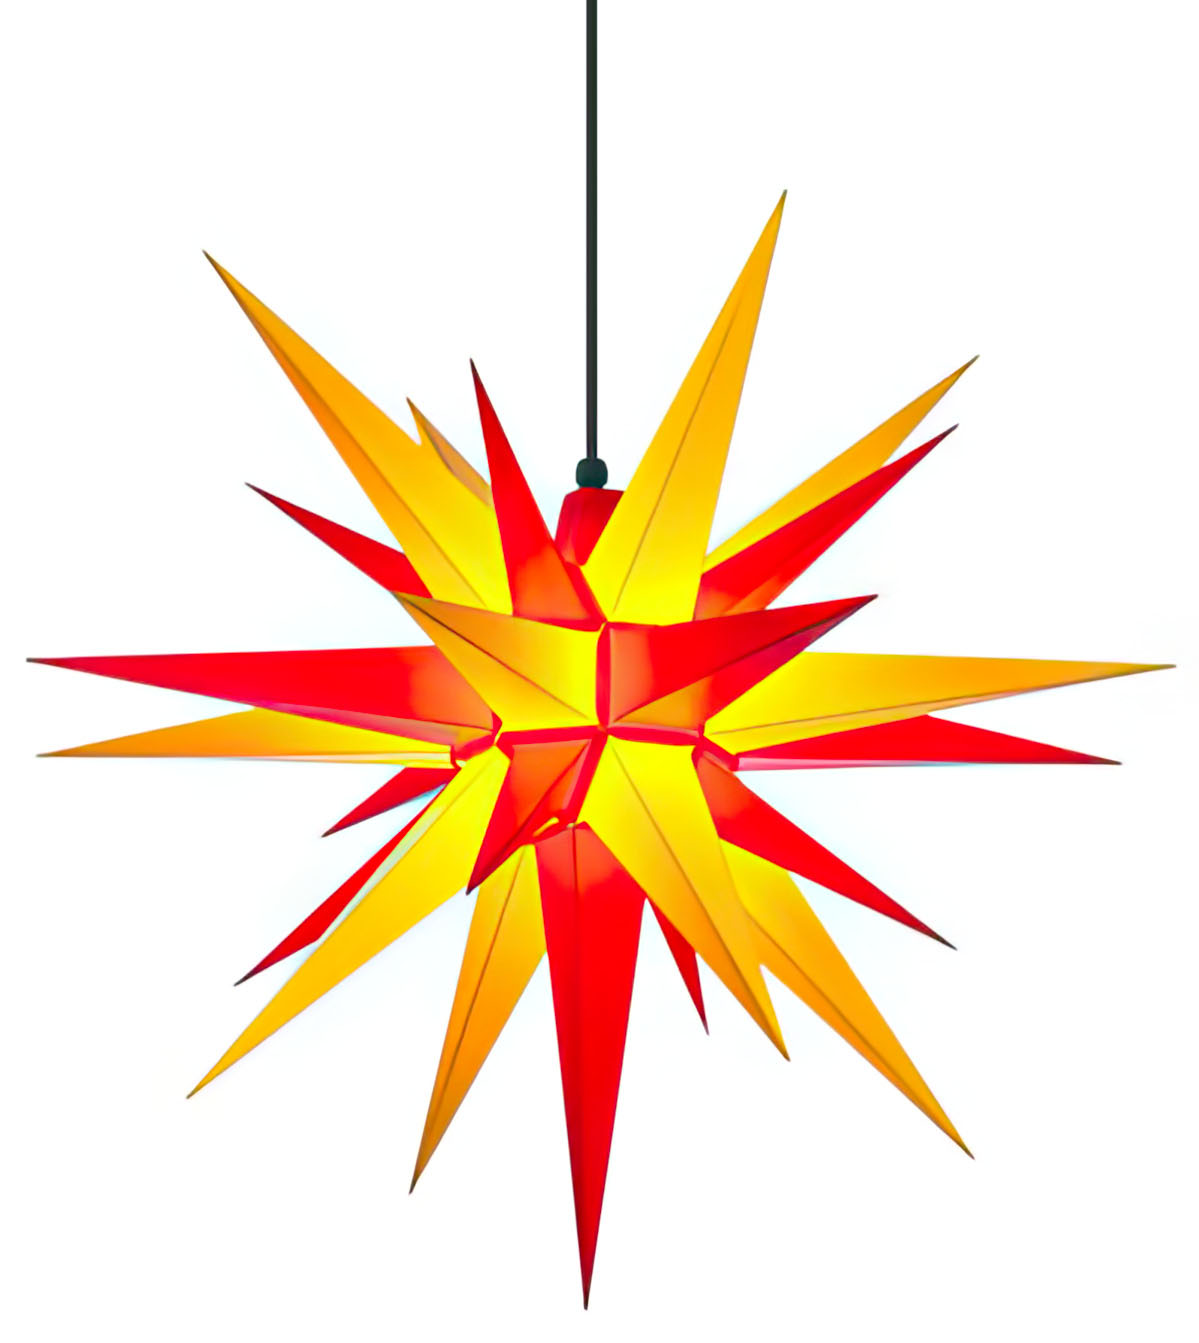 Herrnhuter Stern A7 Ø 68 cm Kunststoffstern - gelb/rot Wunderschöner und sehr hochwertiger Weihnachtsstern für Innen und Außen - das Original mit 25 Zacken